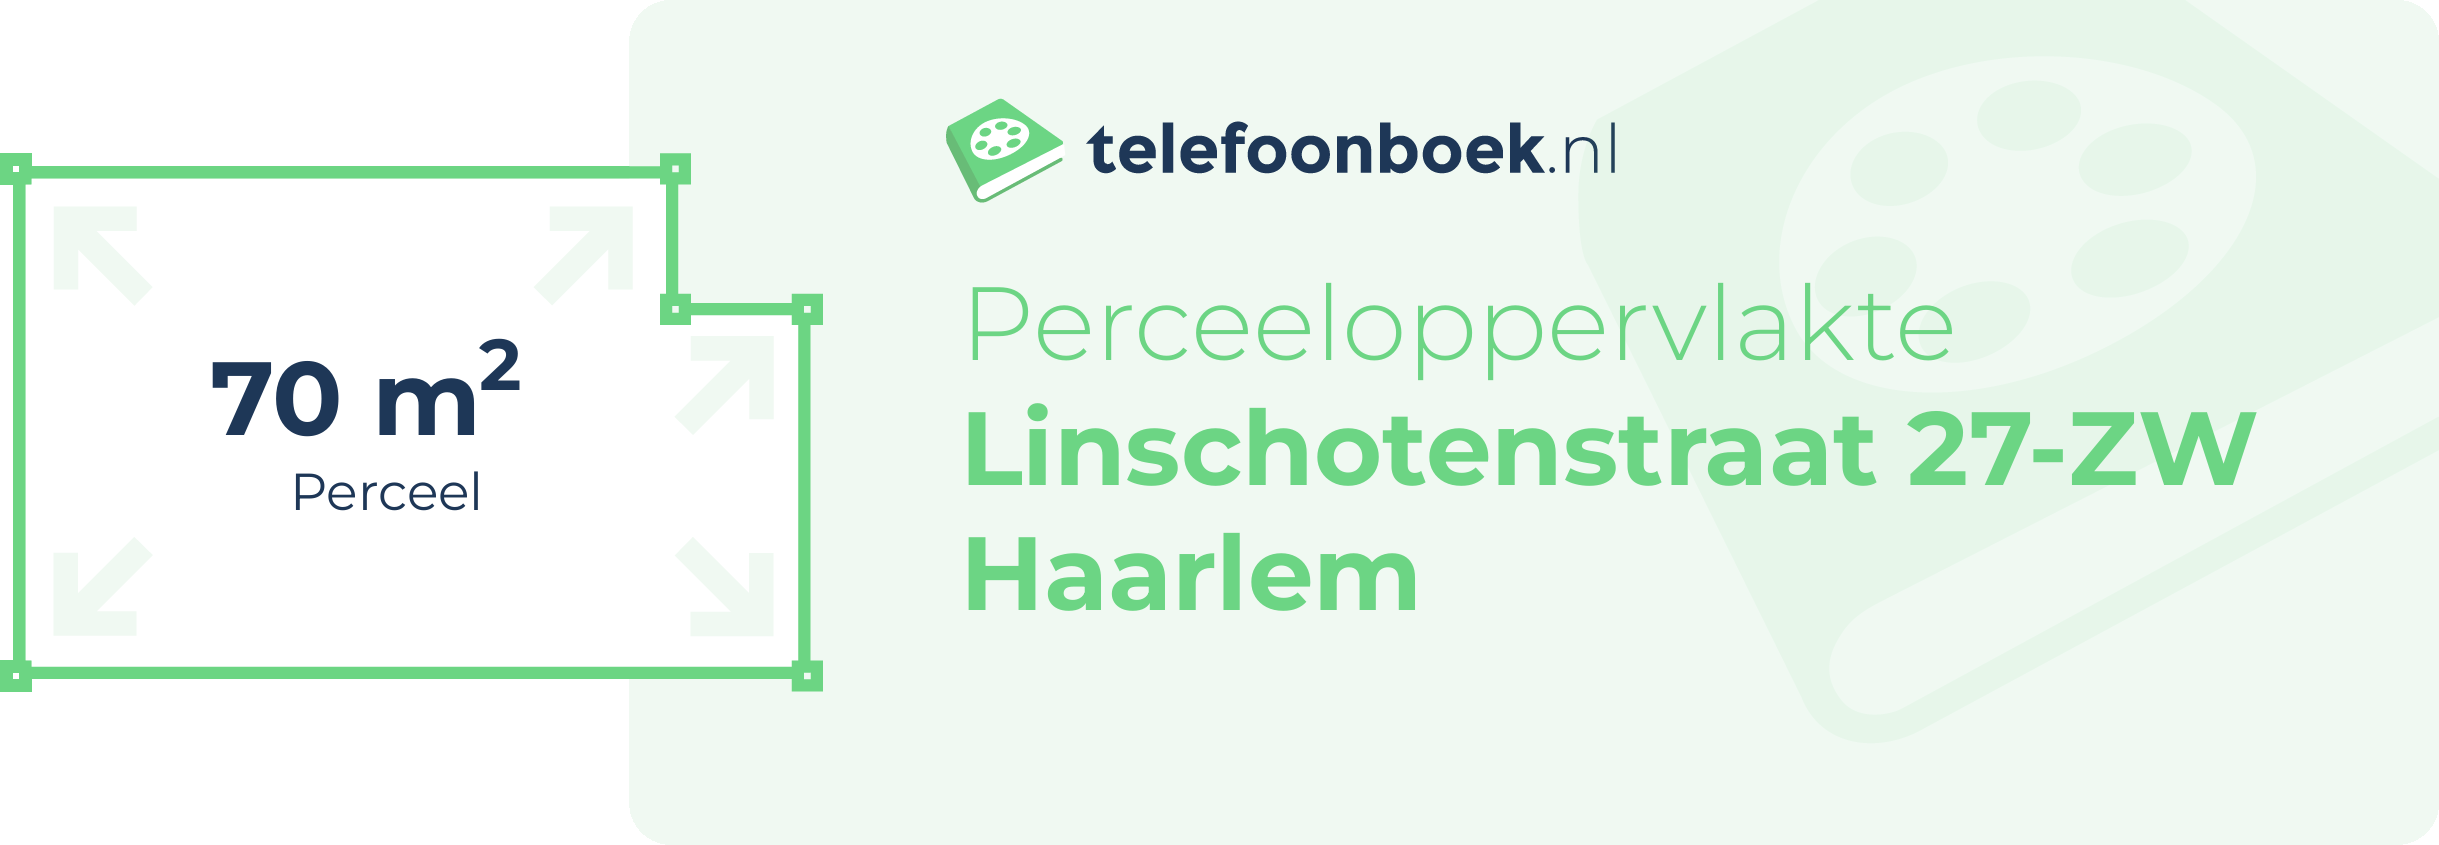 Perceeloppervlakte Linschotenstraat 27-ZW Haarlem